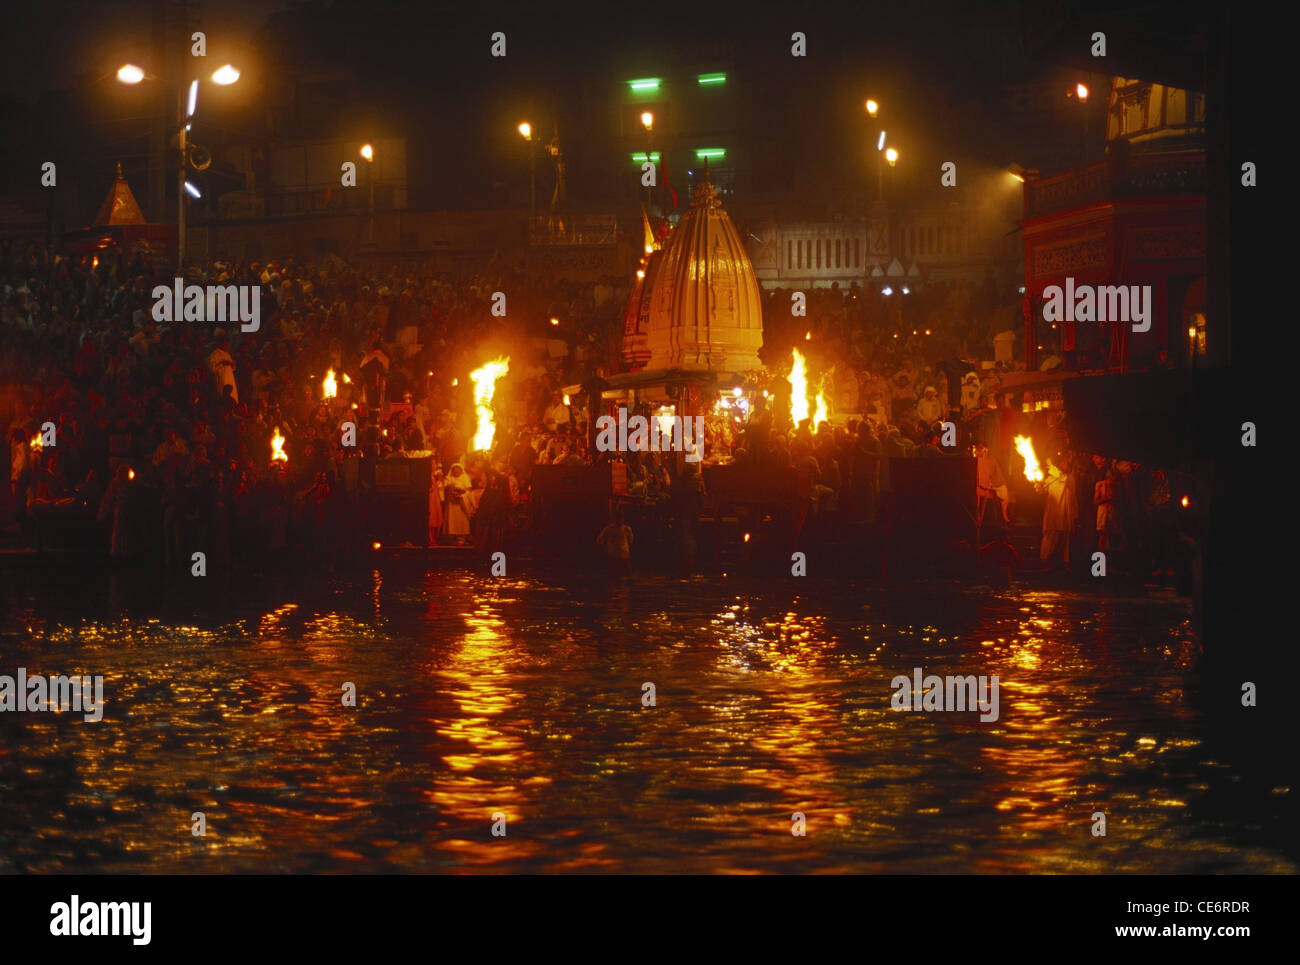 Les gens priant à Ganga river arati har ki pauri sur echelle ghat haridwar ; ; ; d'Uttaranchal inde Banque D'Images